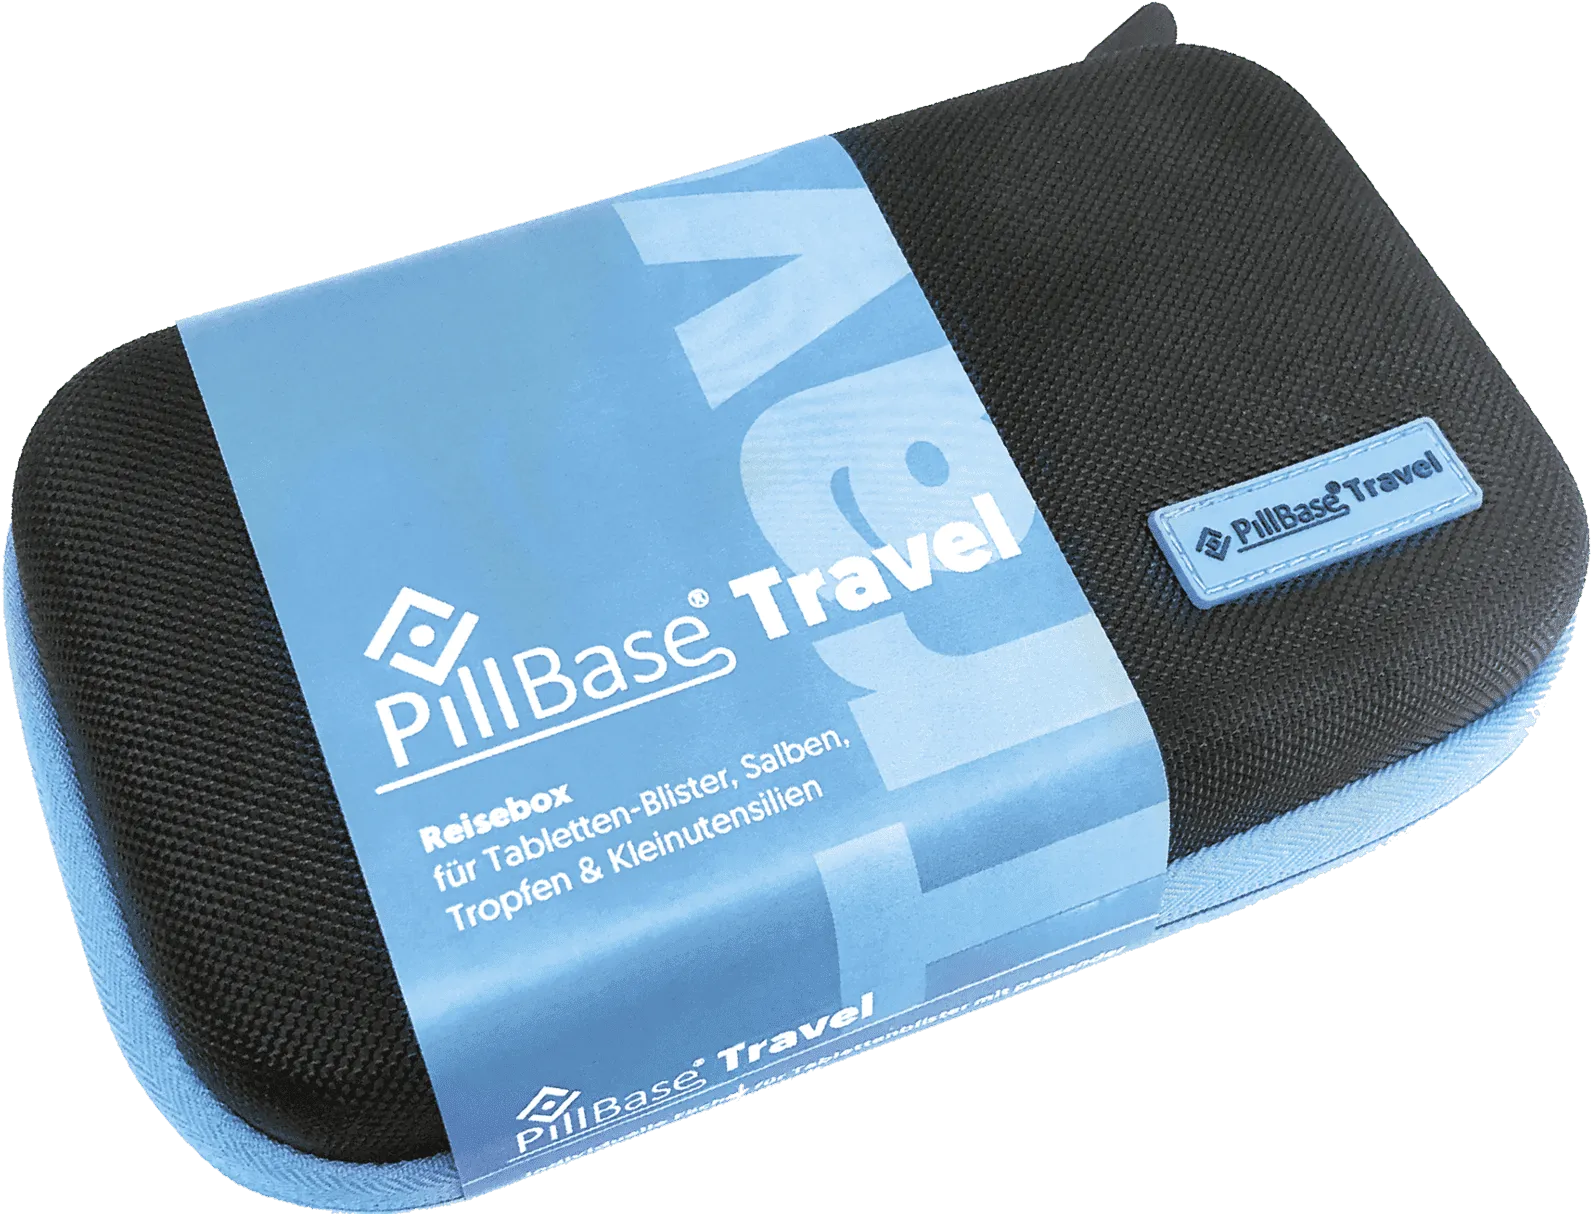 Pillbase travel